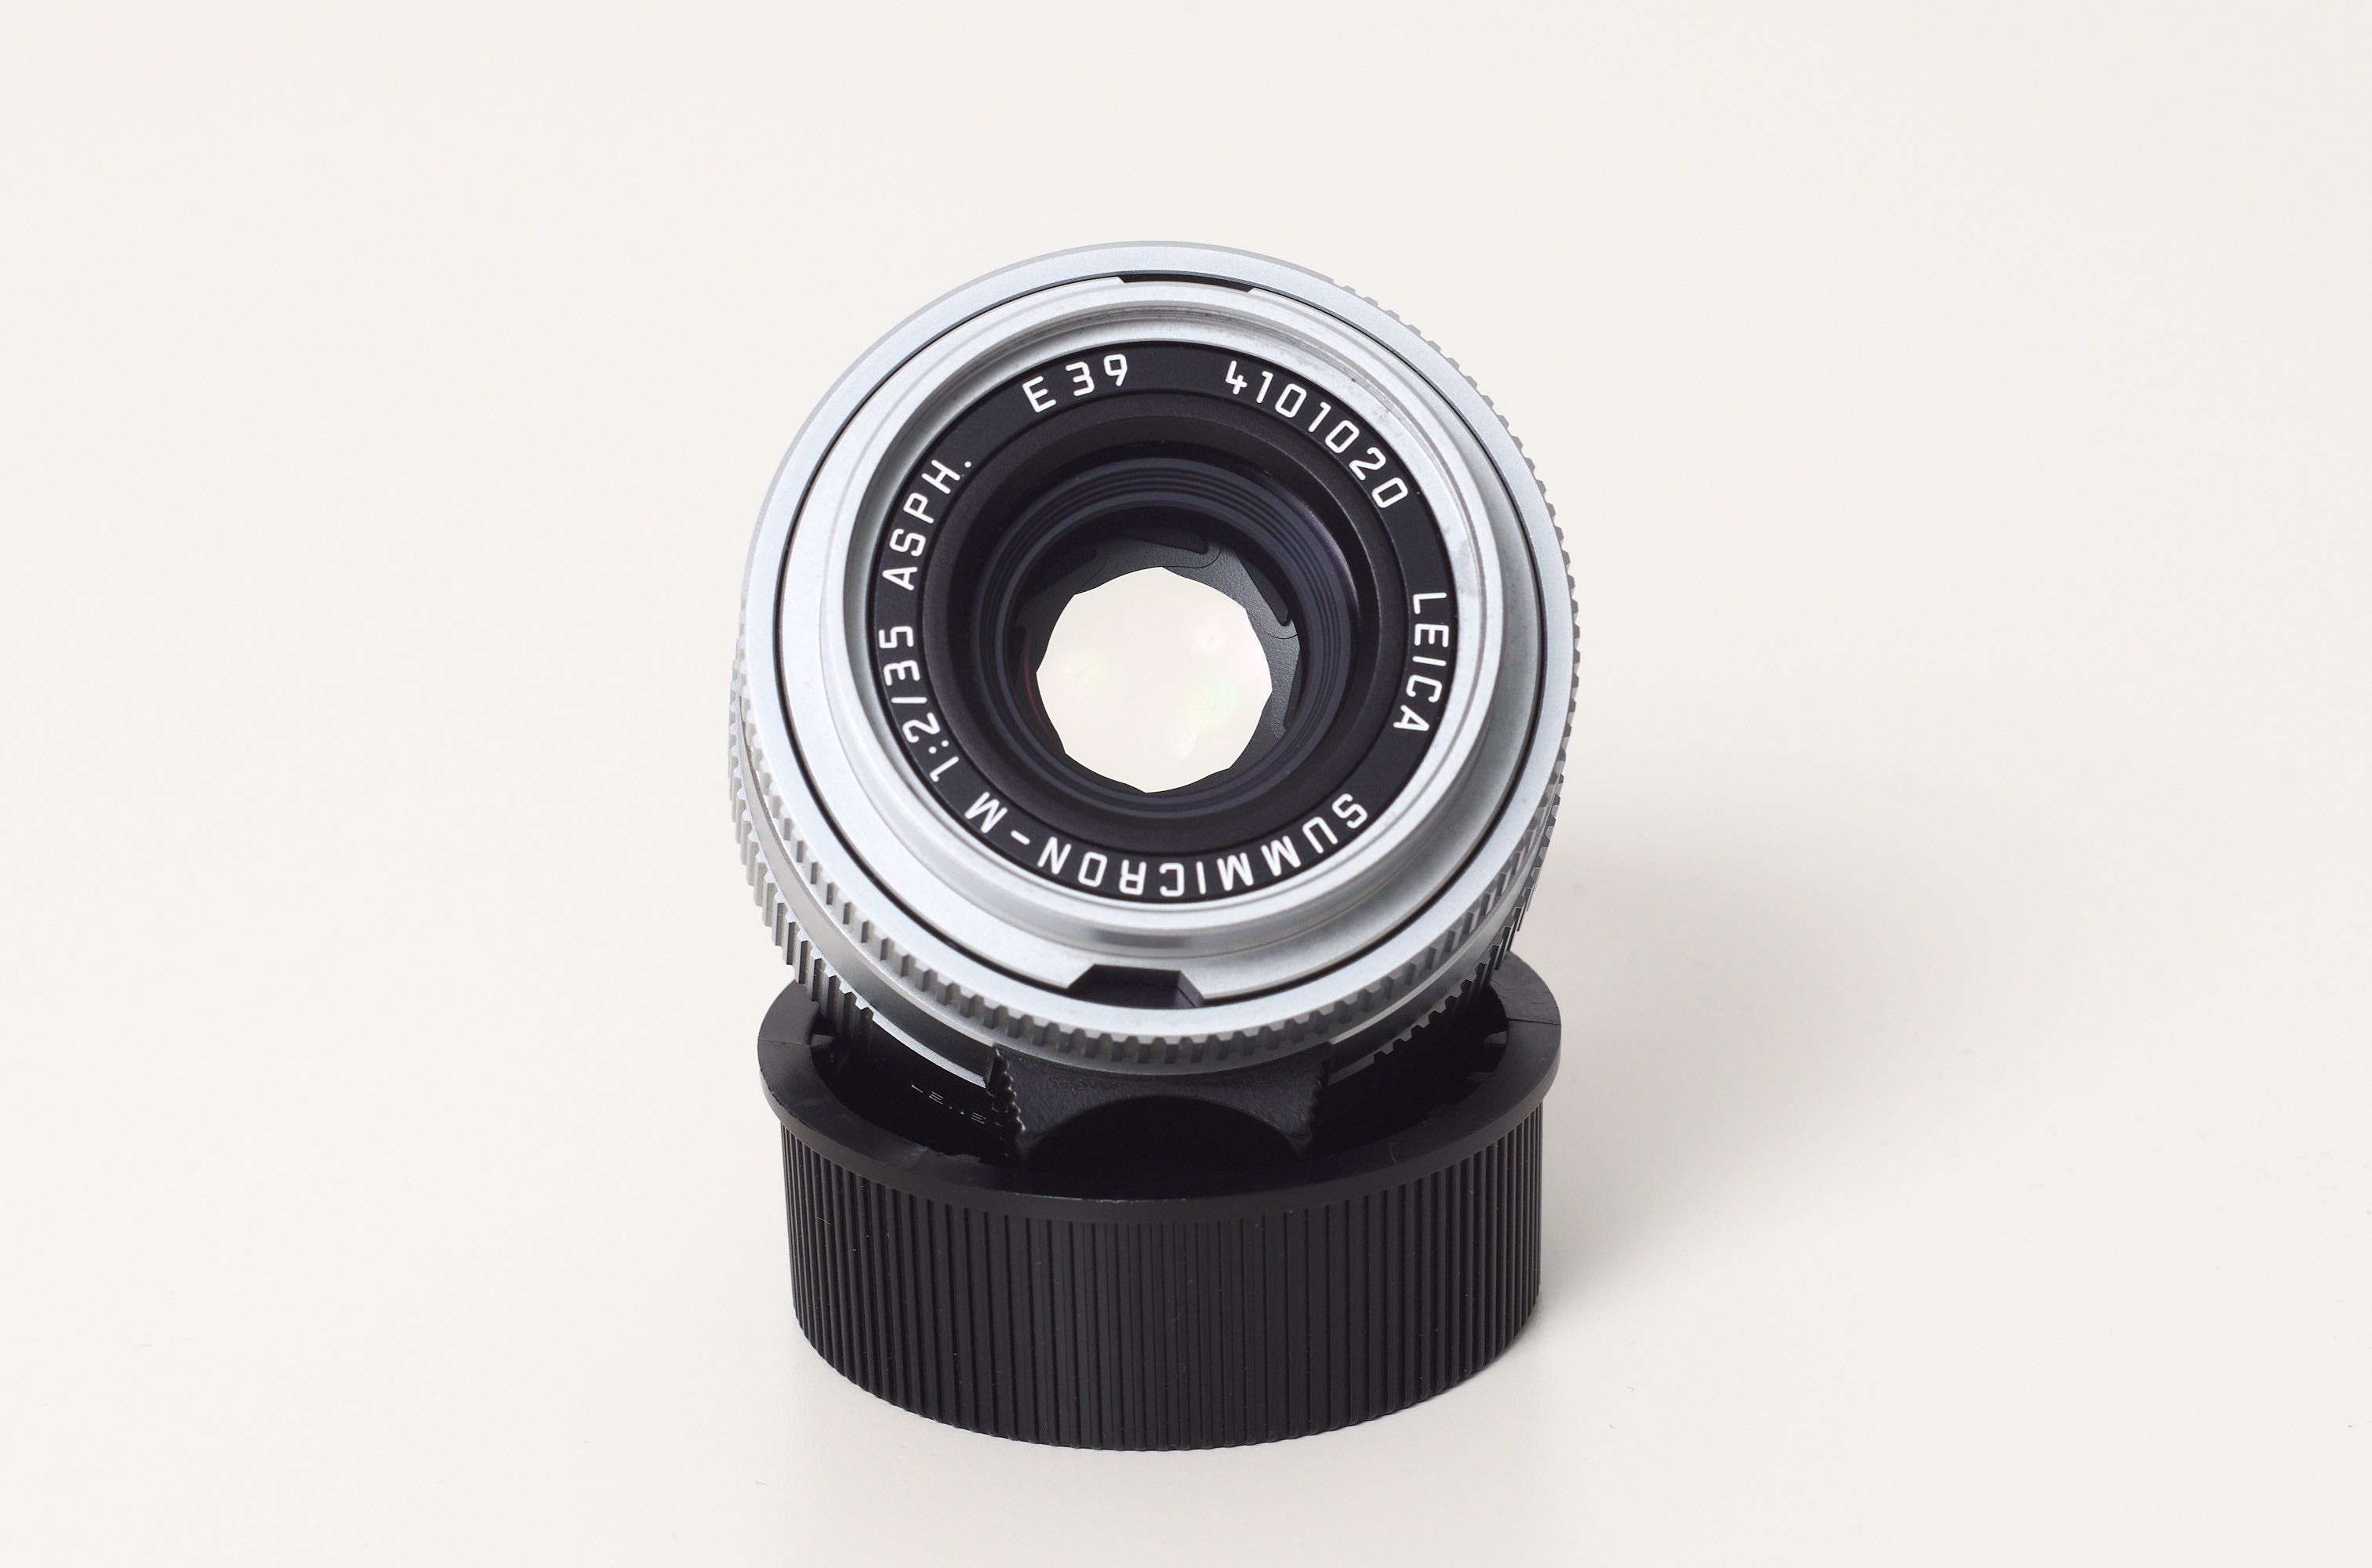 Leica Summicron-M 35 mm ASPH srebny